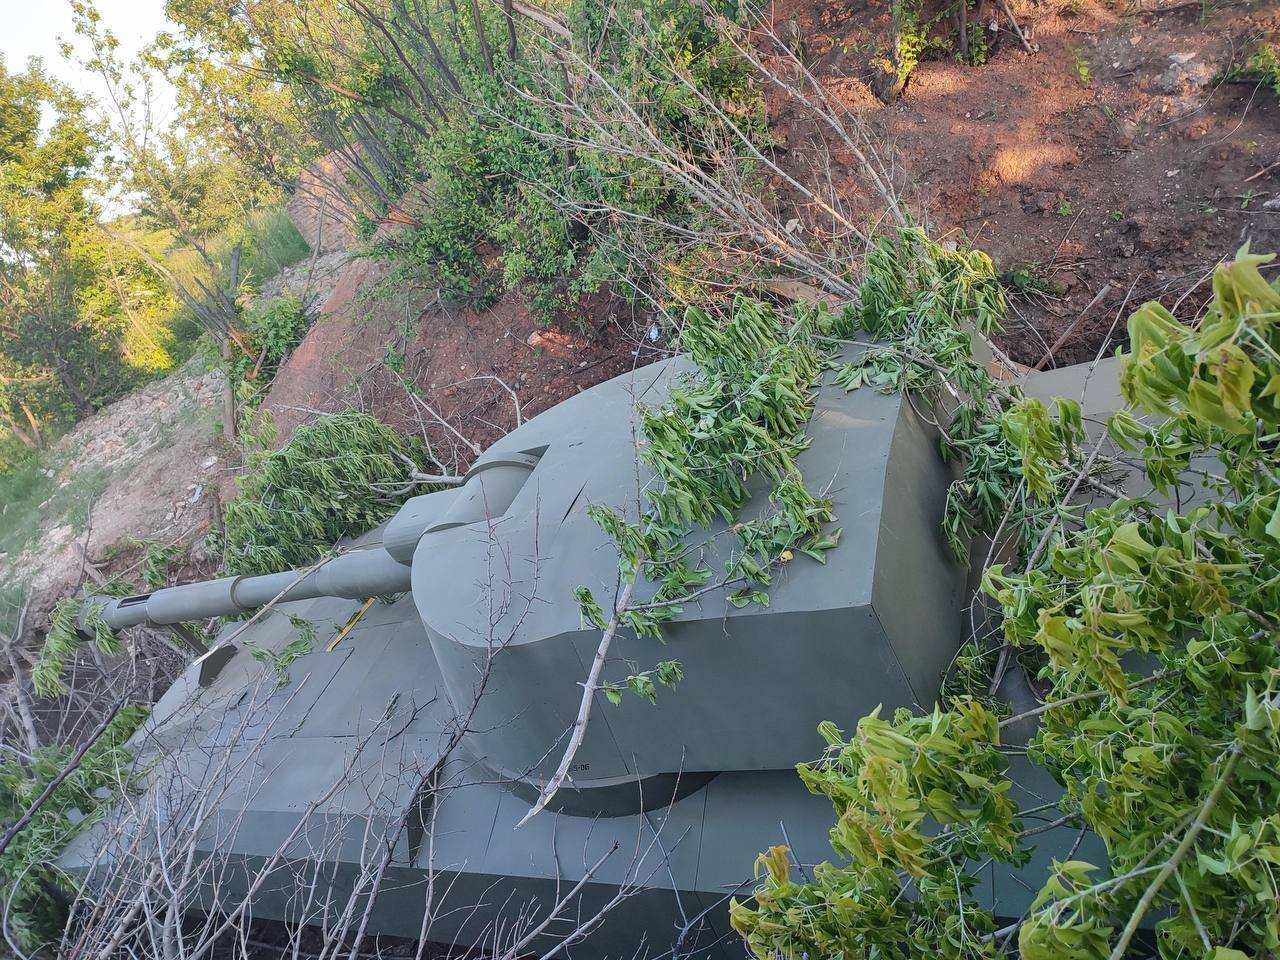 В этот раз макет украинской гаубицы: российские оккупанты уничтожили очередной муляж военной техники. Фото